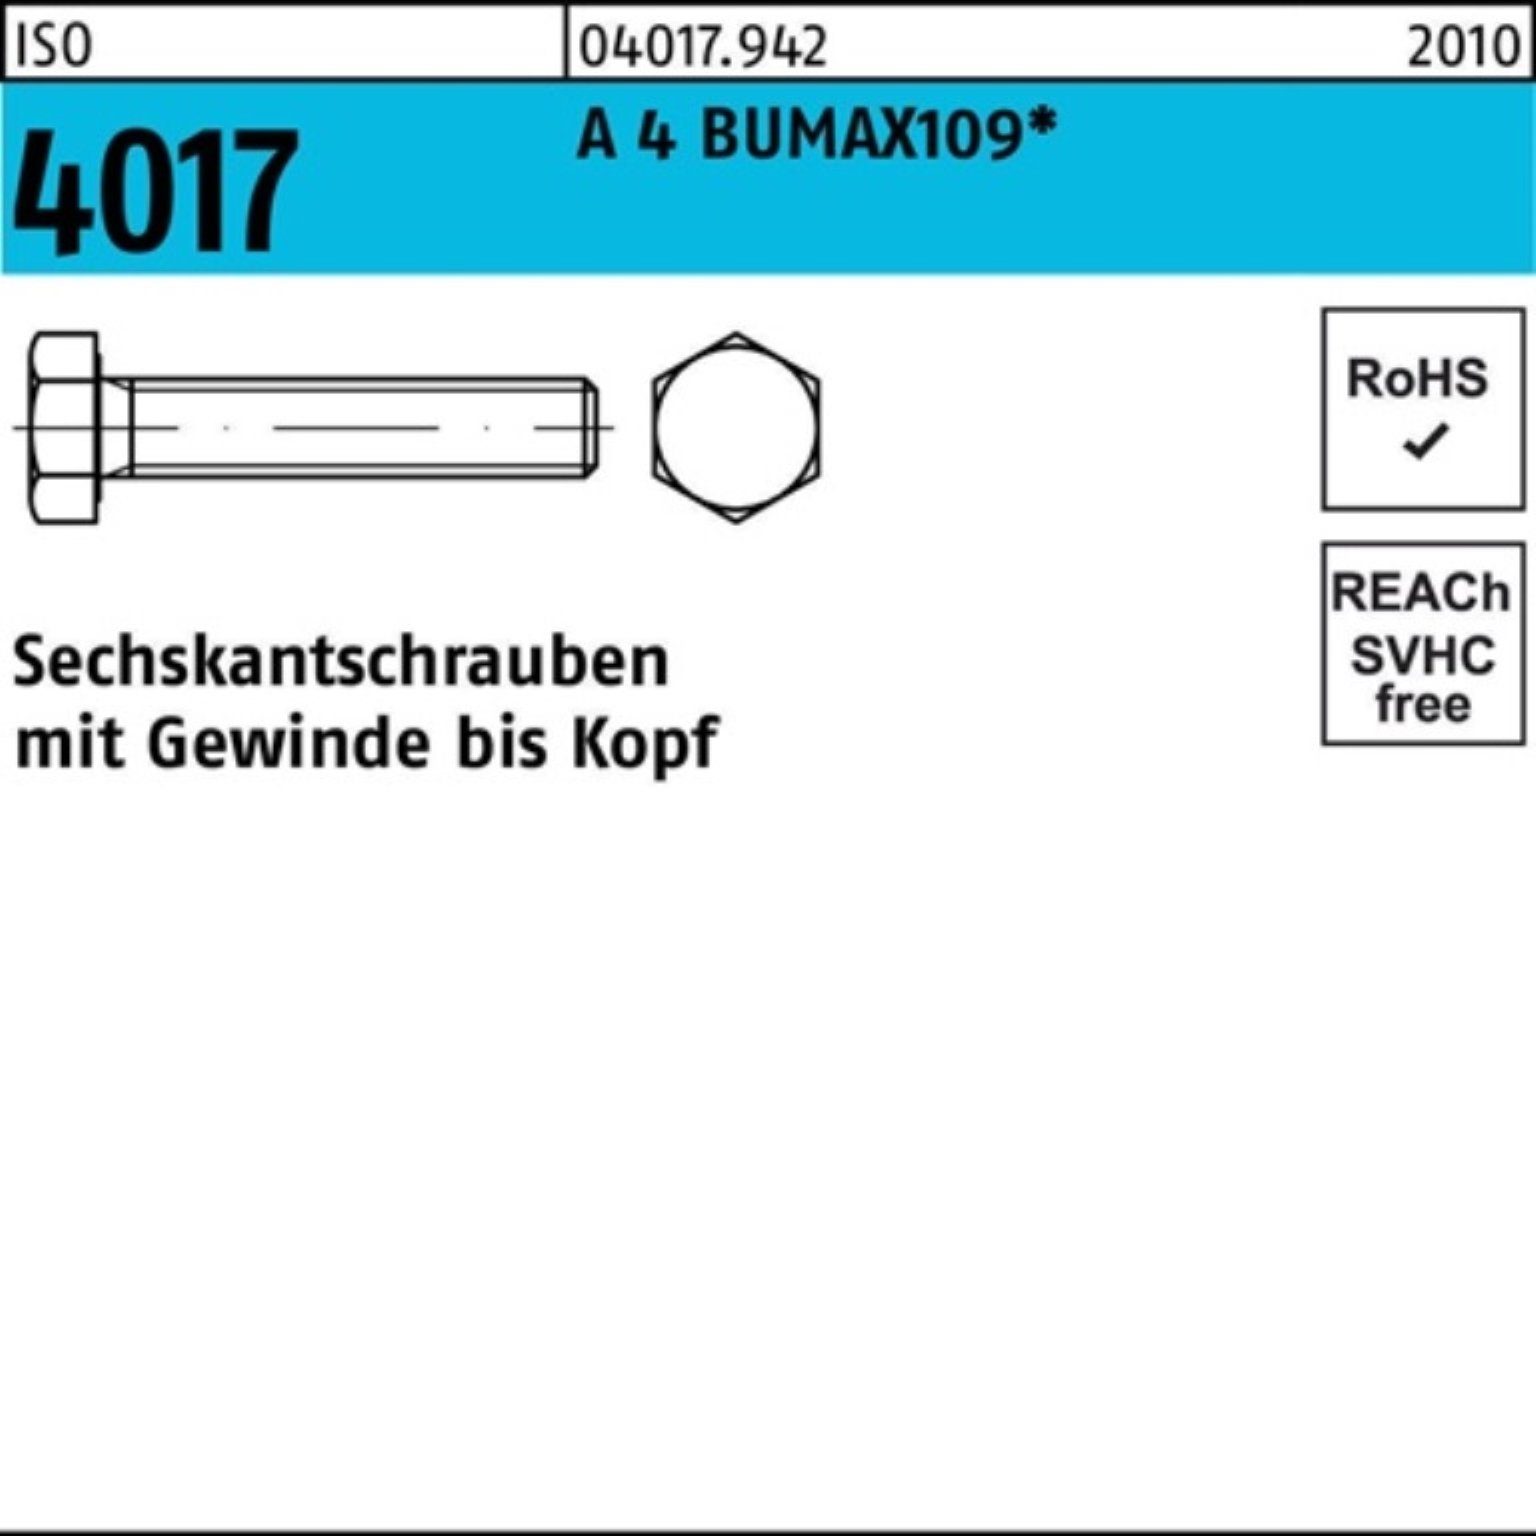 Bufab Sechskantschraube 100er 100 A M6x VG 16 ISO Stüc BUMAX109 4017 Pack Sechskantschraube 4